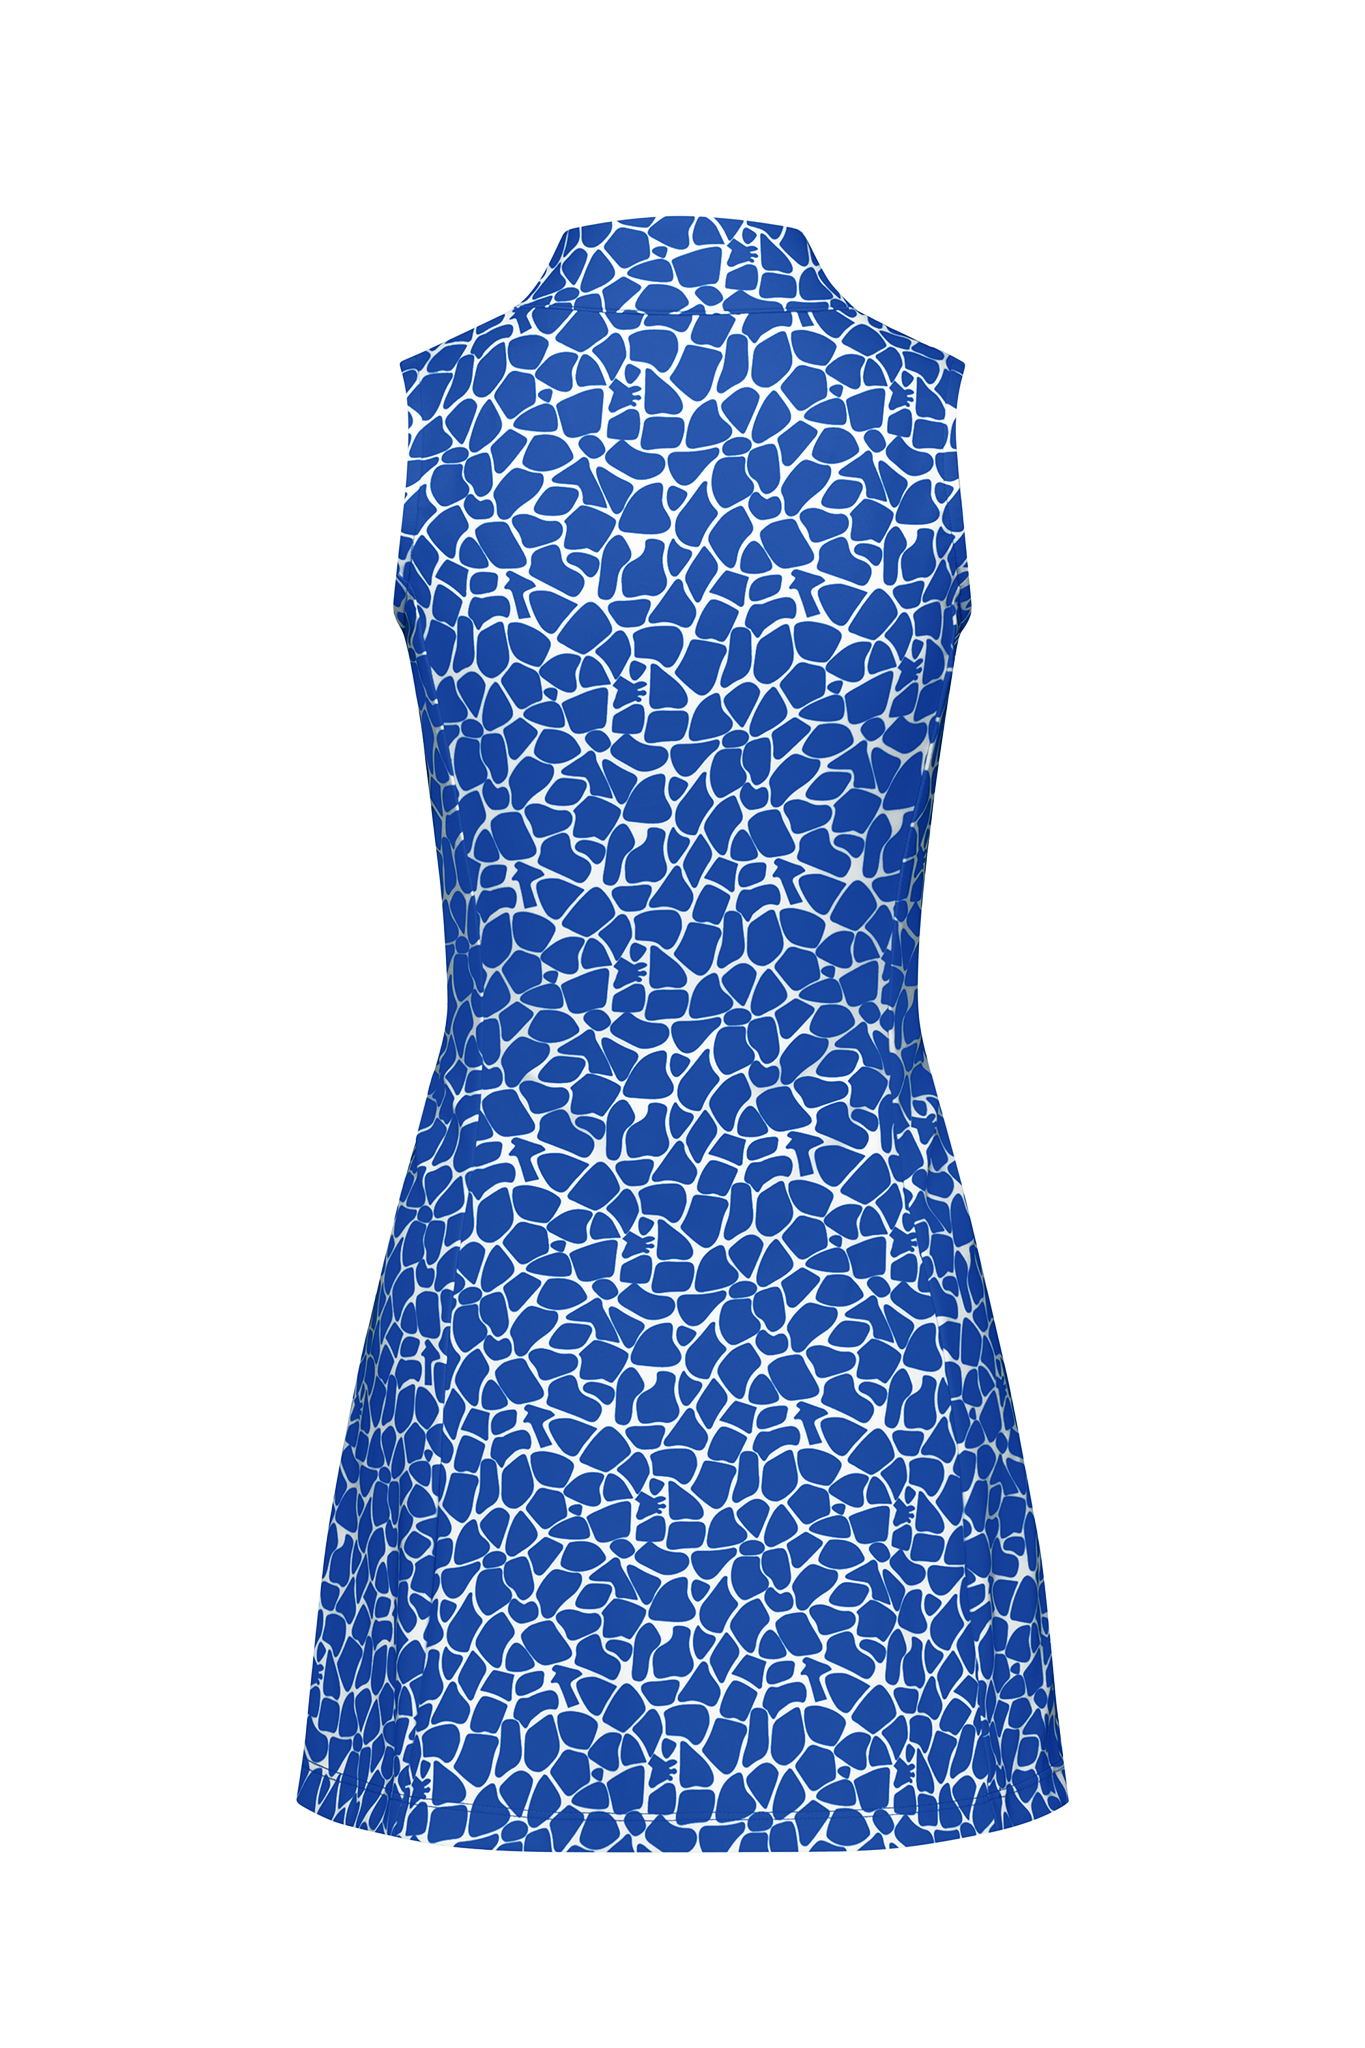 Womens Active Dress - Blue Giraffe